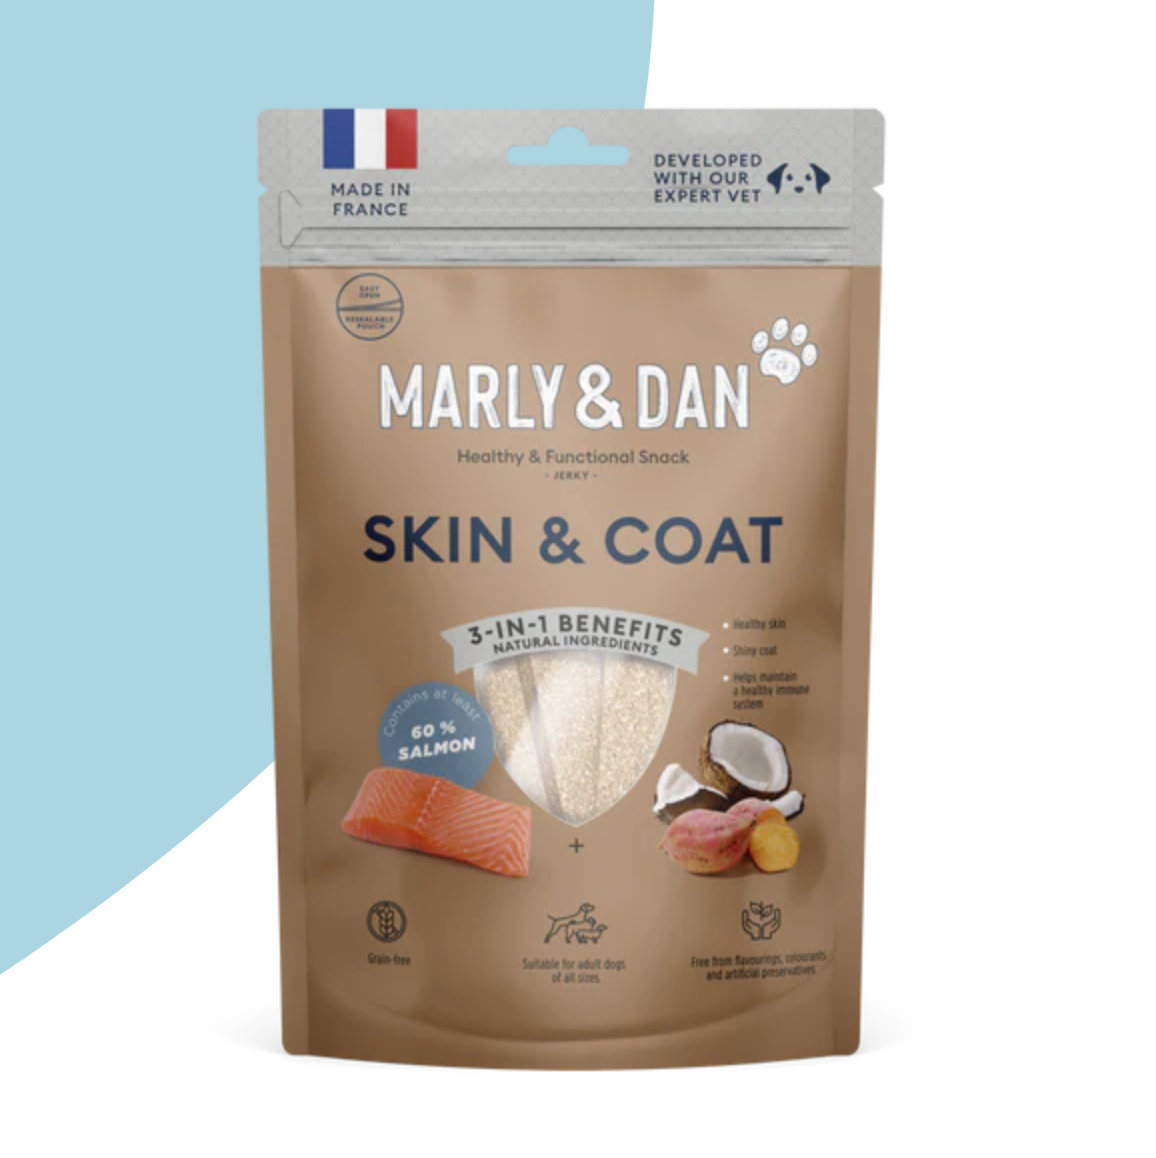 Marly & Dan Skin & Coat